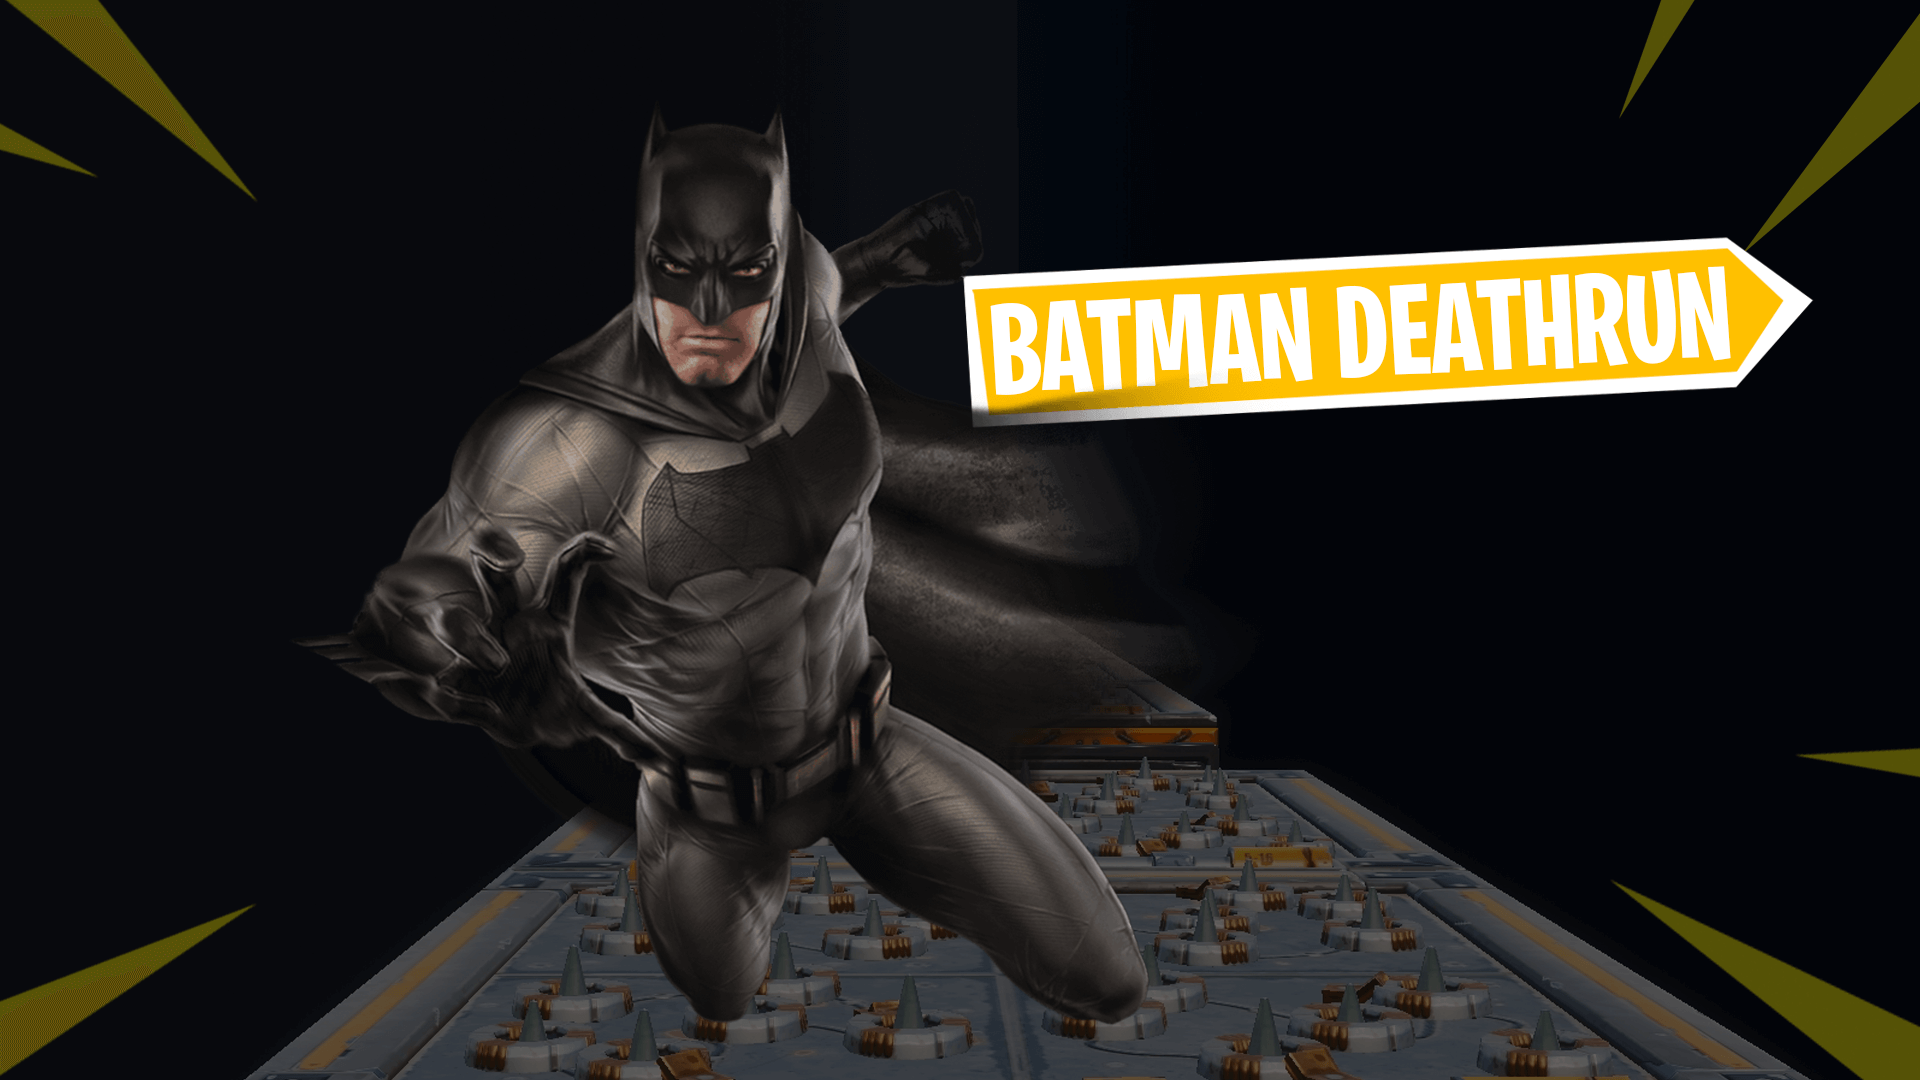 50 Level Batman Deathrun Fortnite Creative Map Codes Dropnite Com